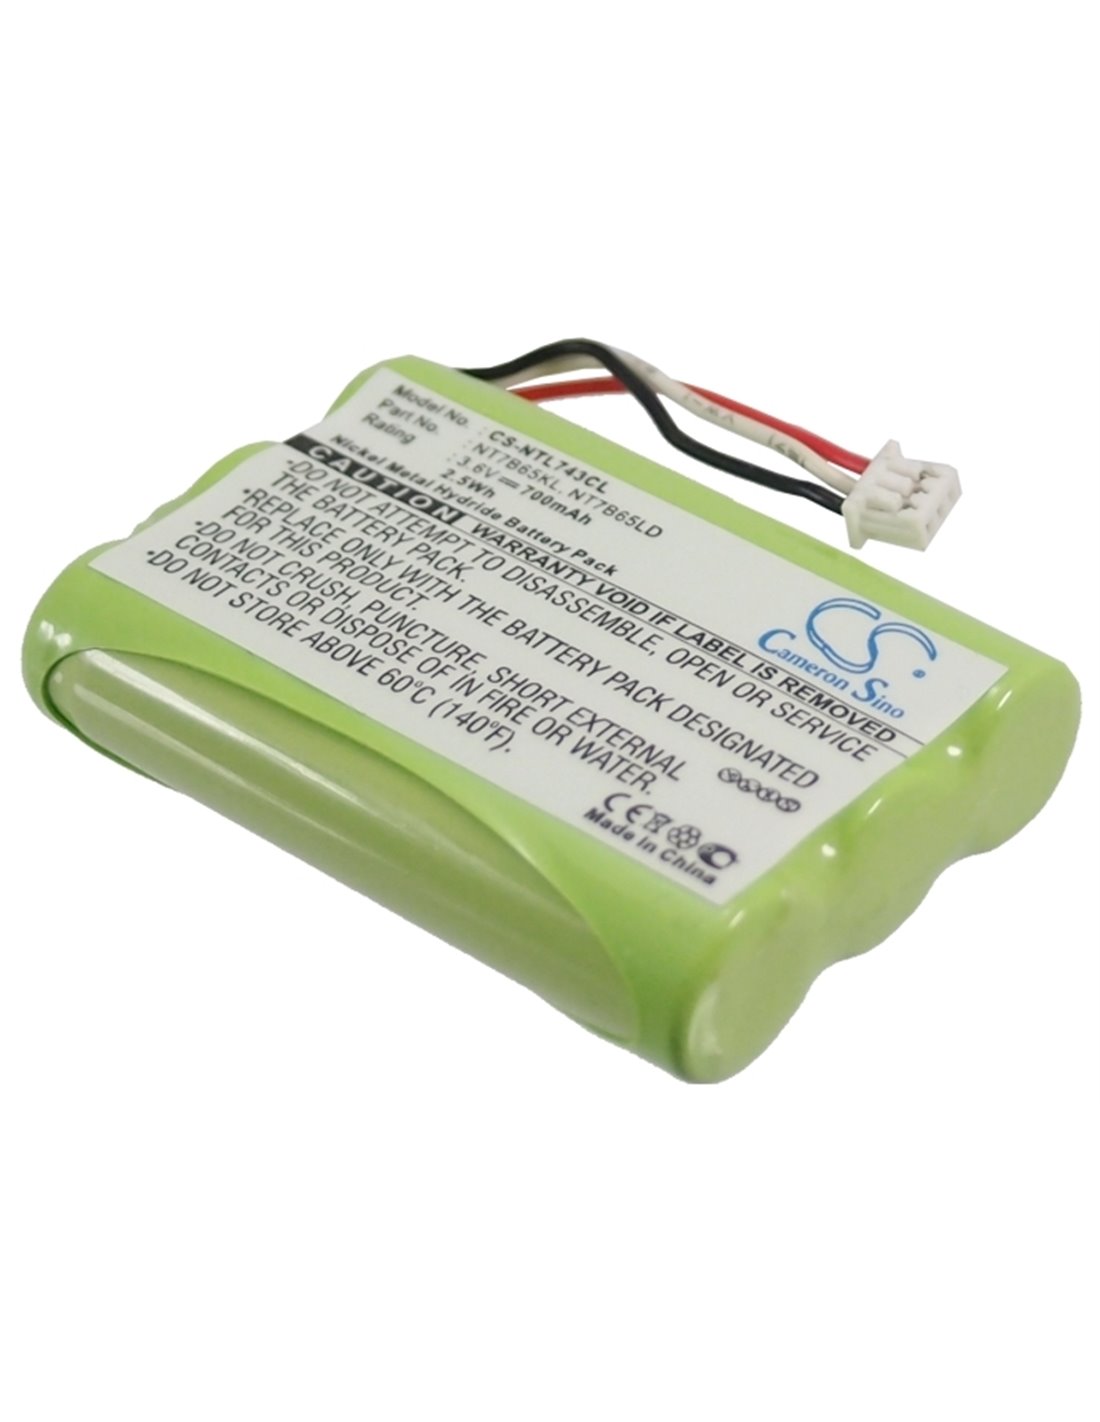 Battery for Spectralink, 7480, 7520, 7522, 7540, 3.6V, 700mAh - 2.52Wh